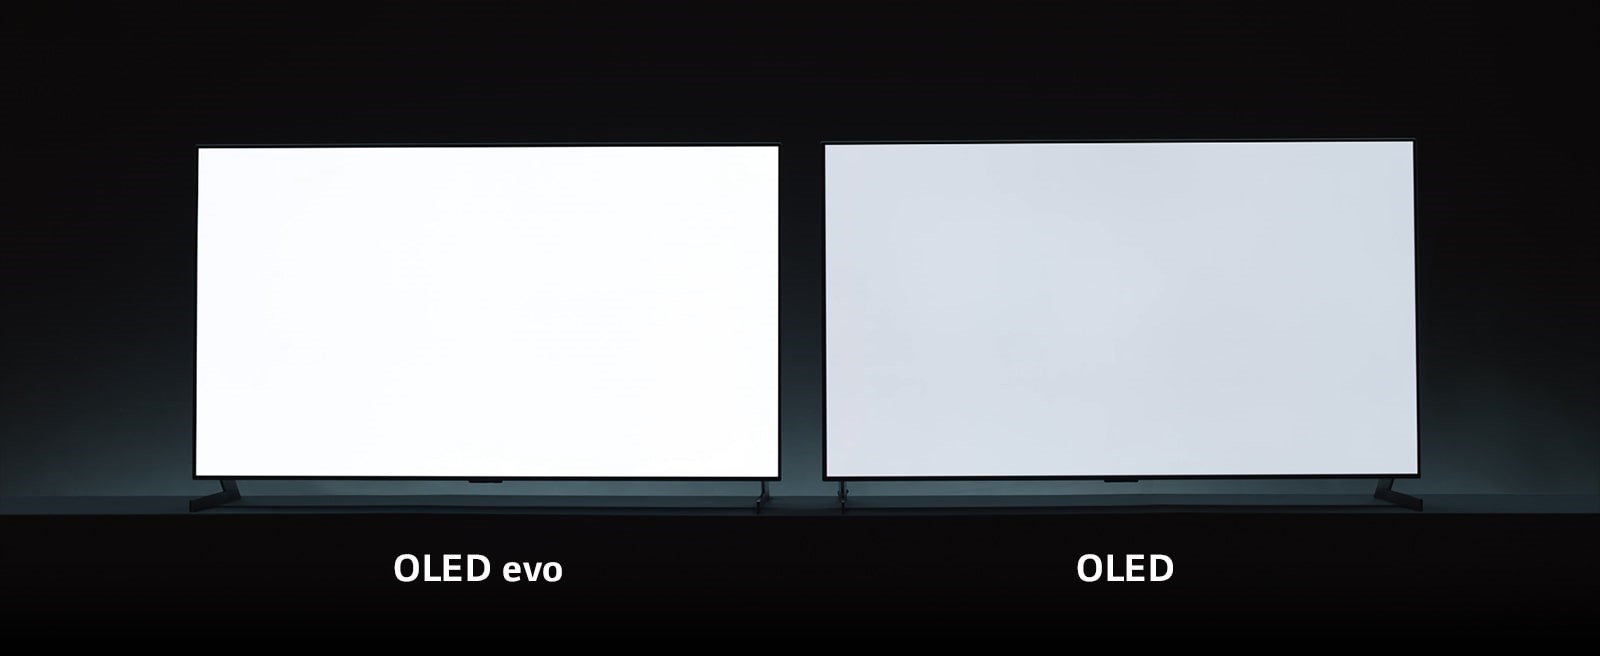 Tấm nền của OLED evo cho độ sáng hình ảnh cao hơn 20%.